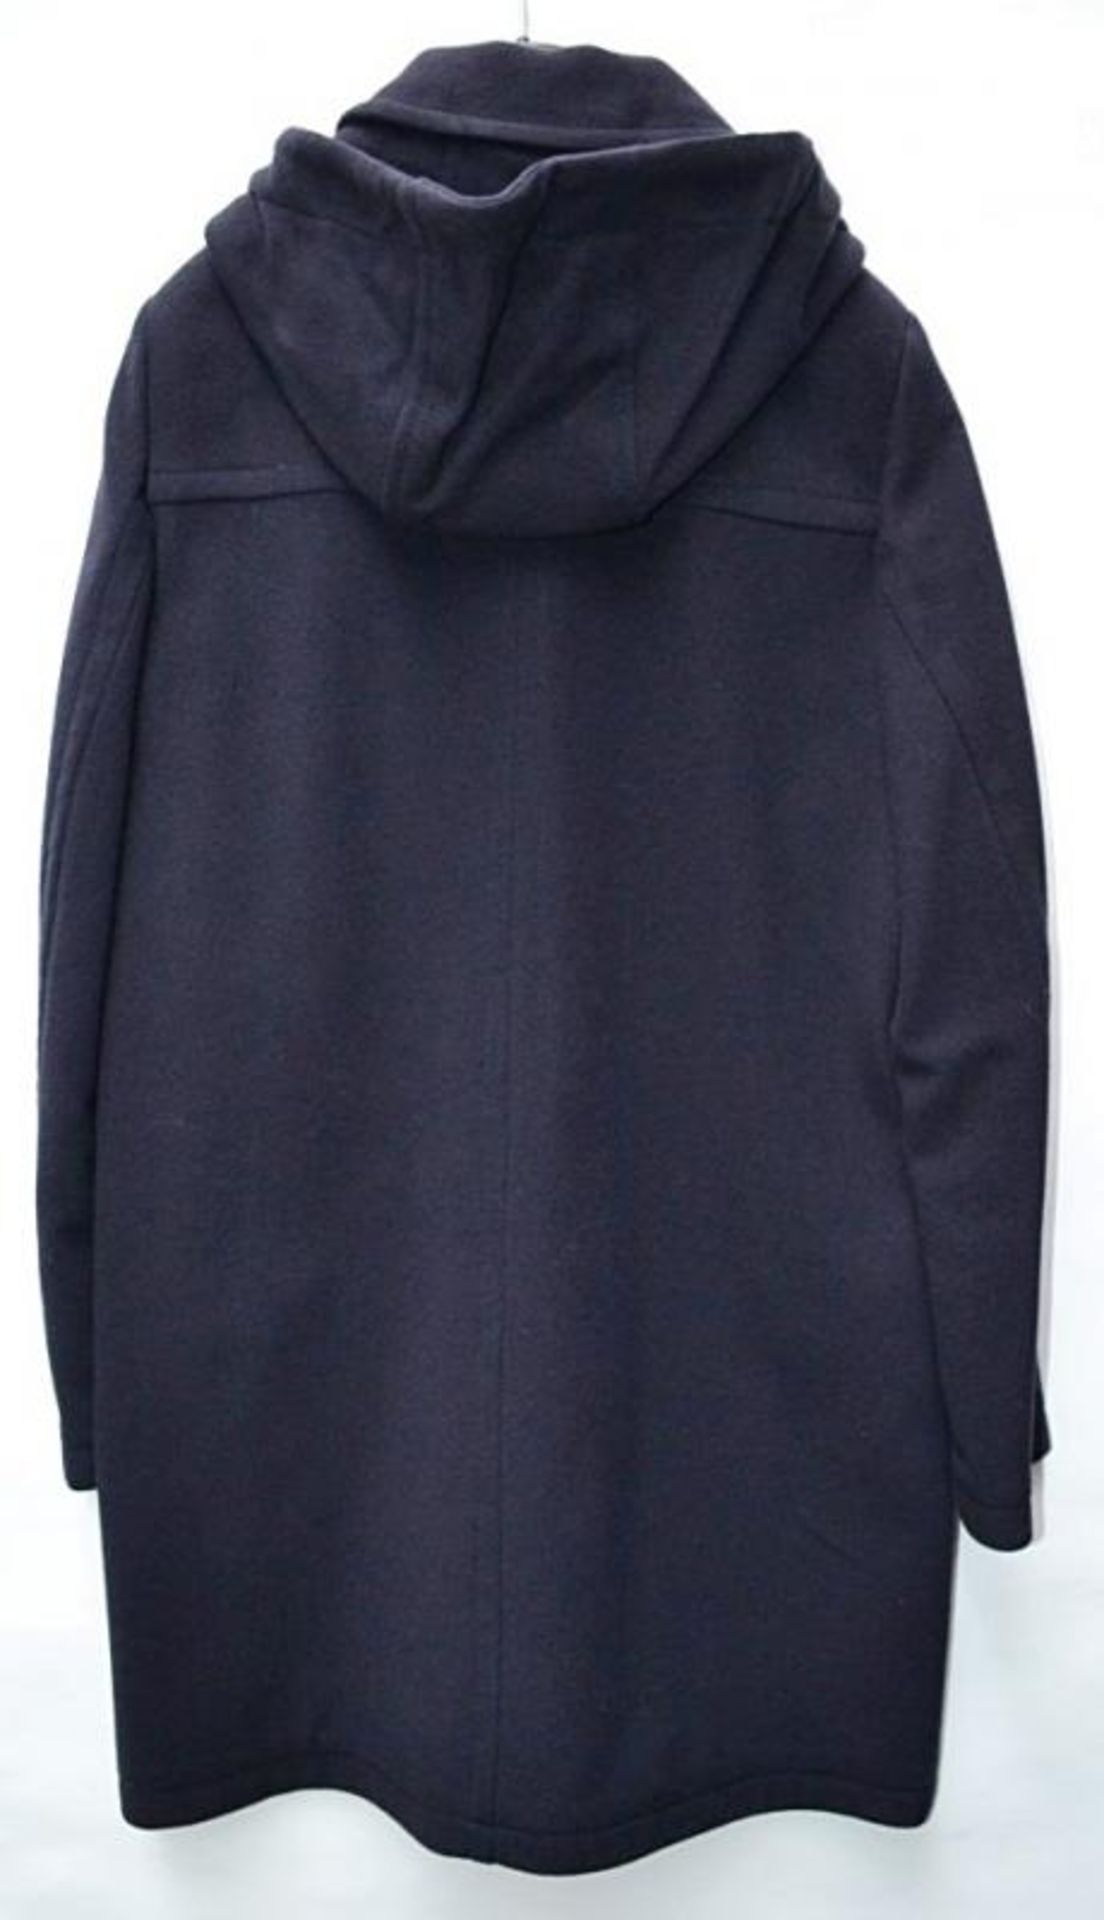 1 x Steilmann Womens Premium 'Virgin Wool + Cashmere' Parka-Style Winter Coat In Dark Navy - UK Size - Image 4 of 5